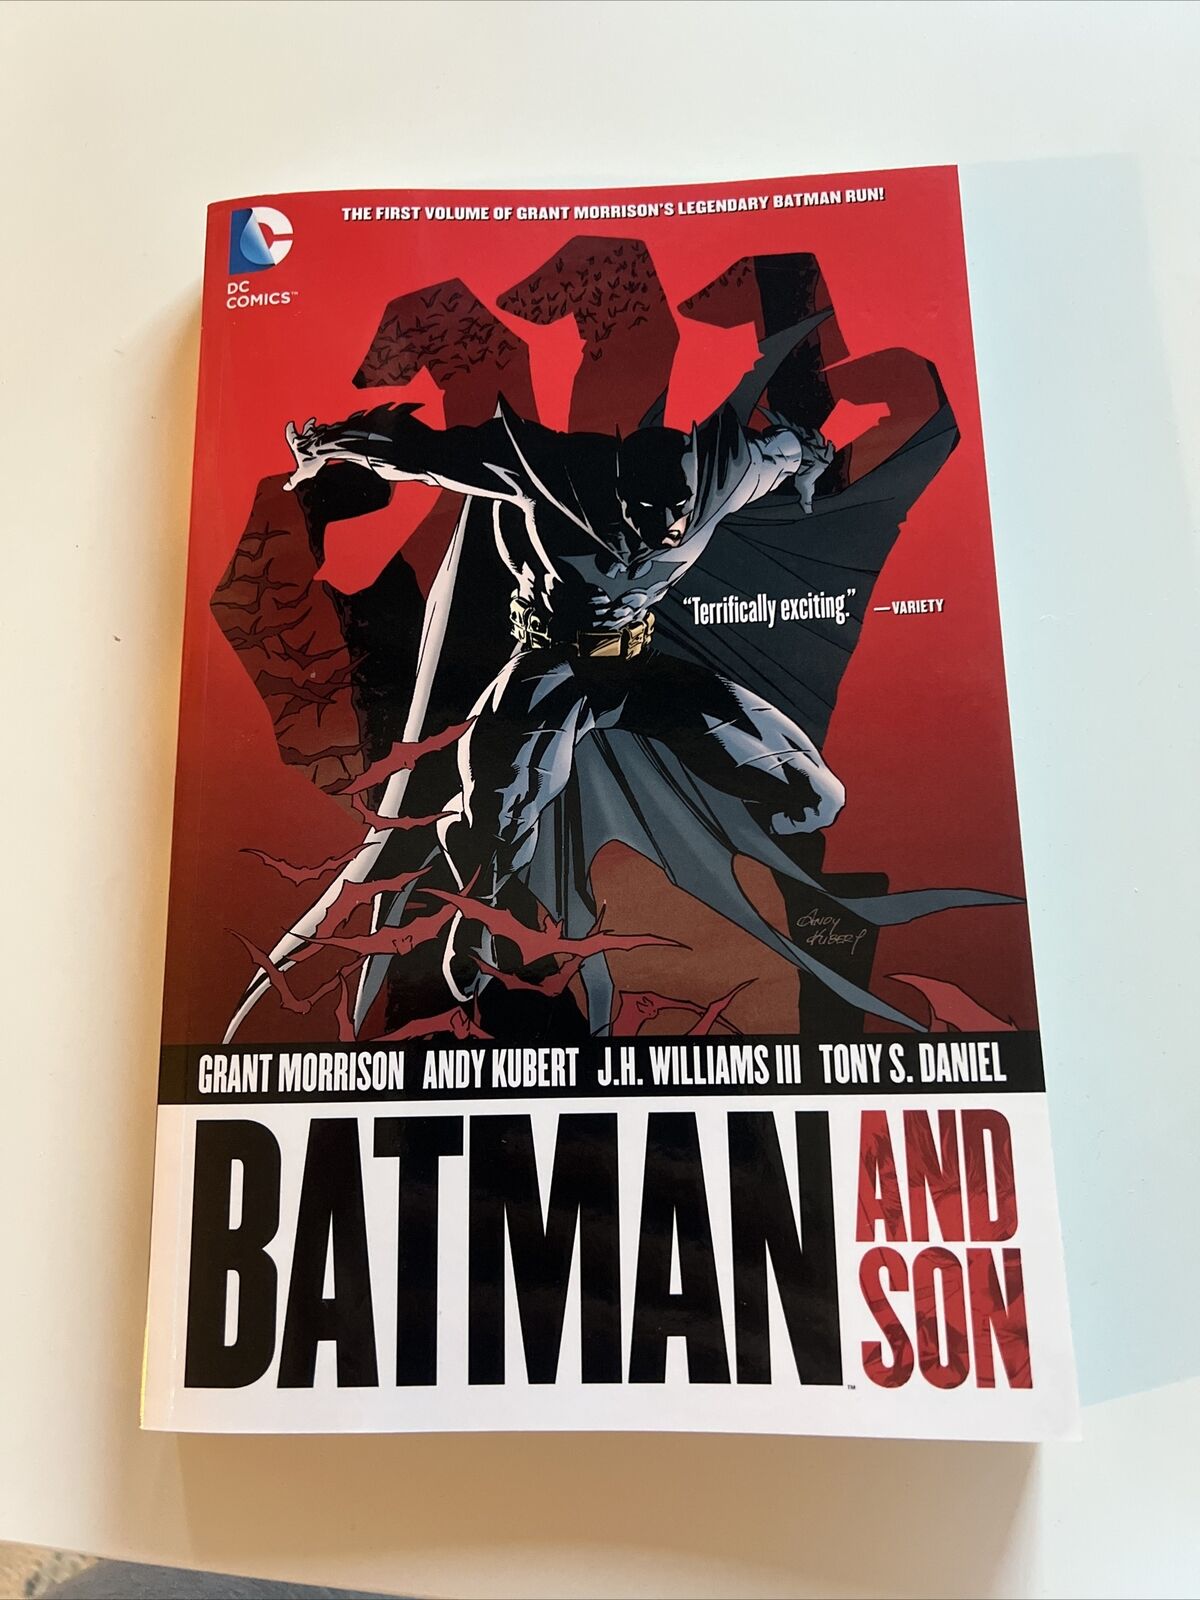 Batman and Son (DC Comics March 2014)